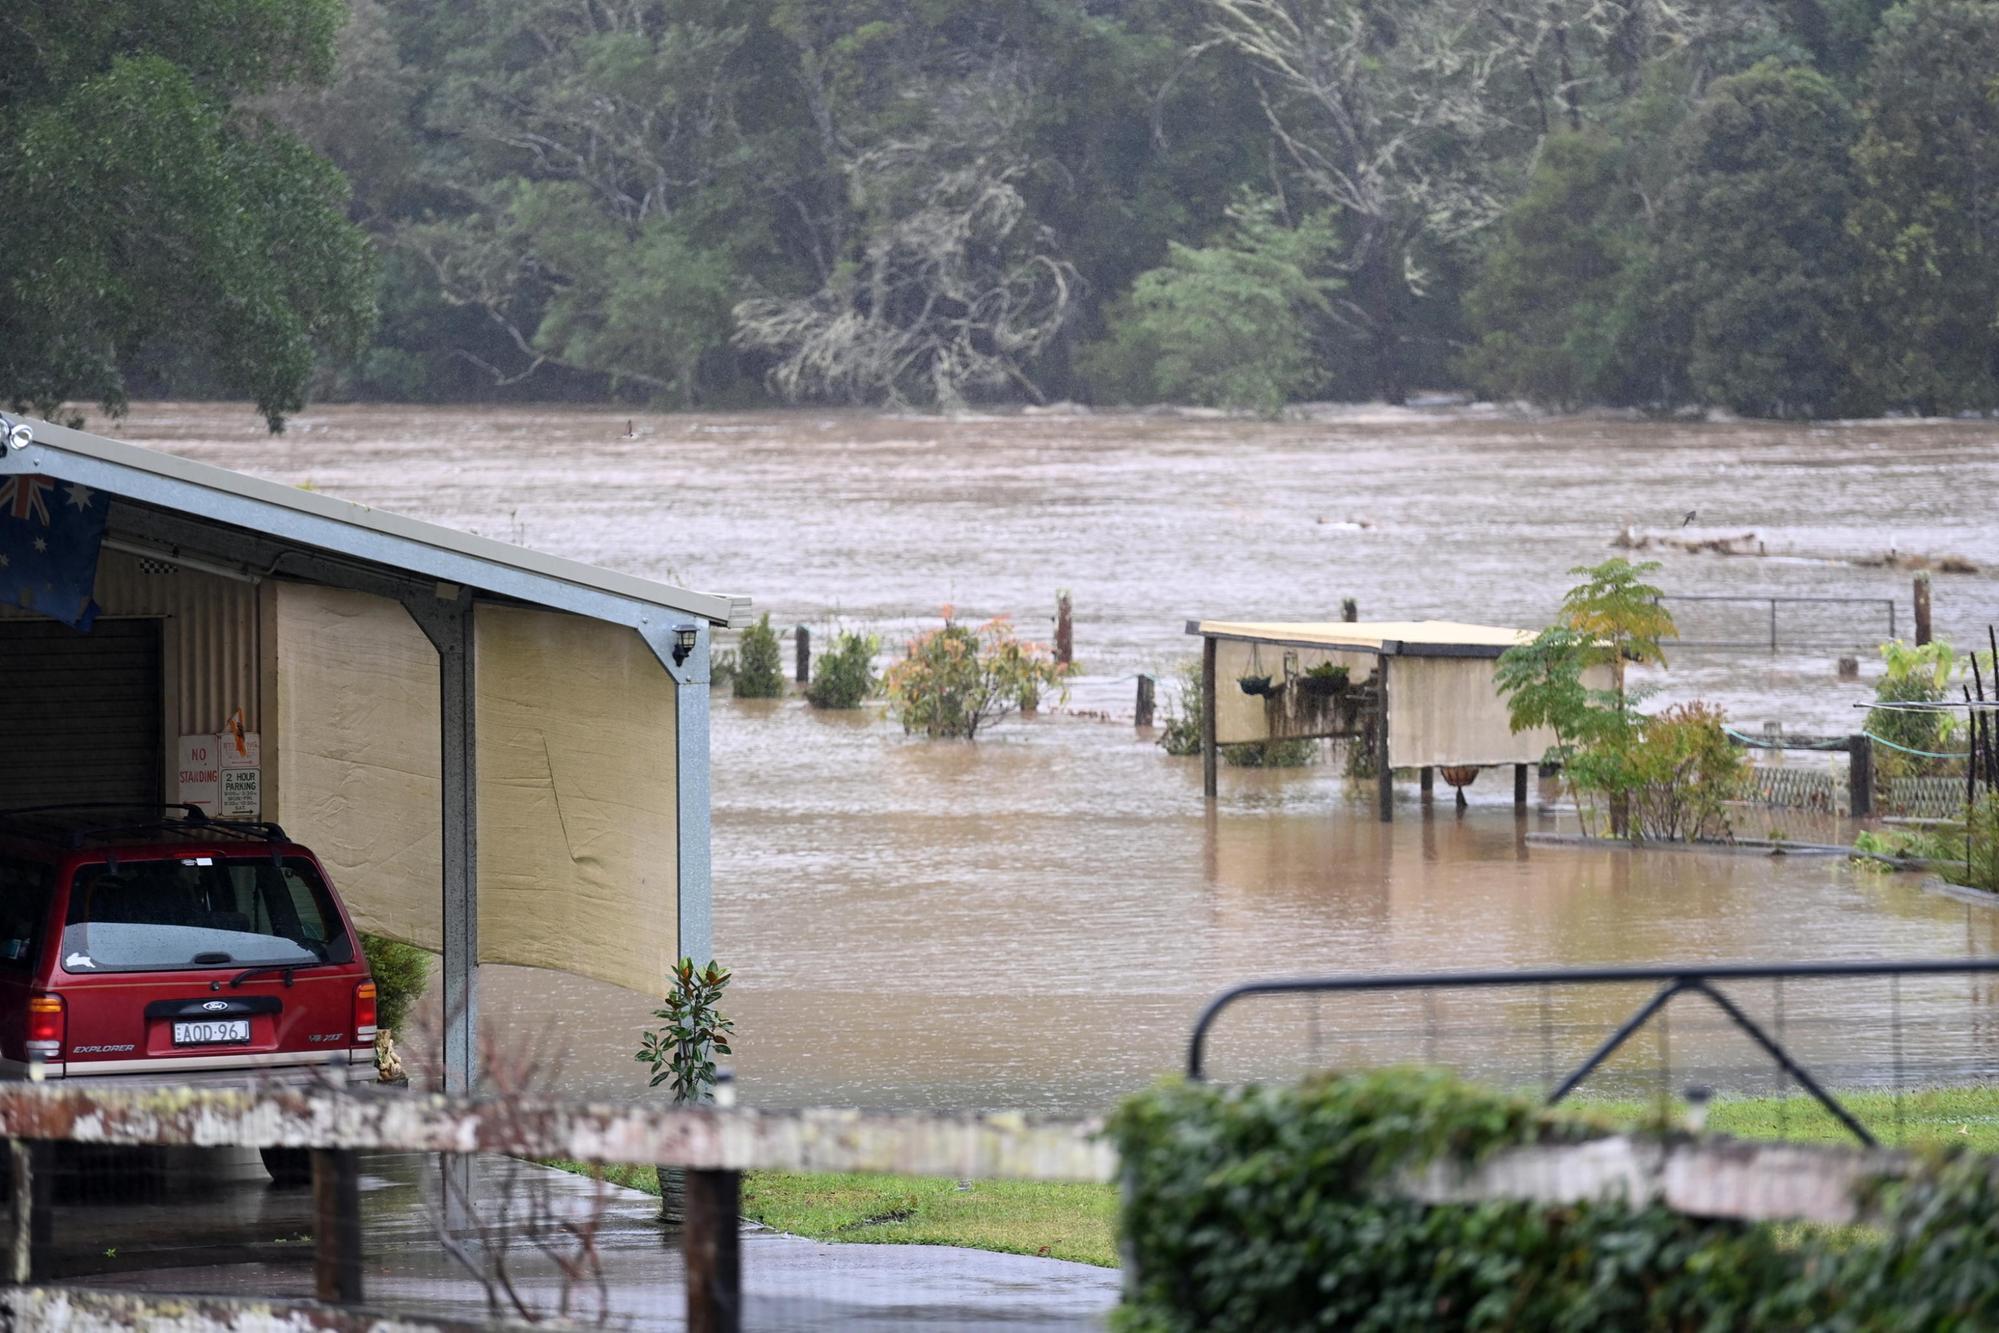 Piogge torrenziali e inondazioni a Sydney, evacuate 50.000 persone